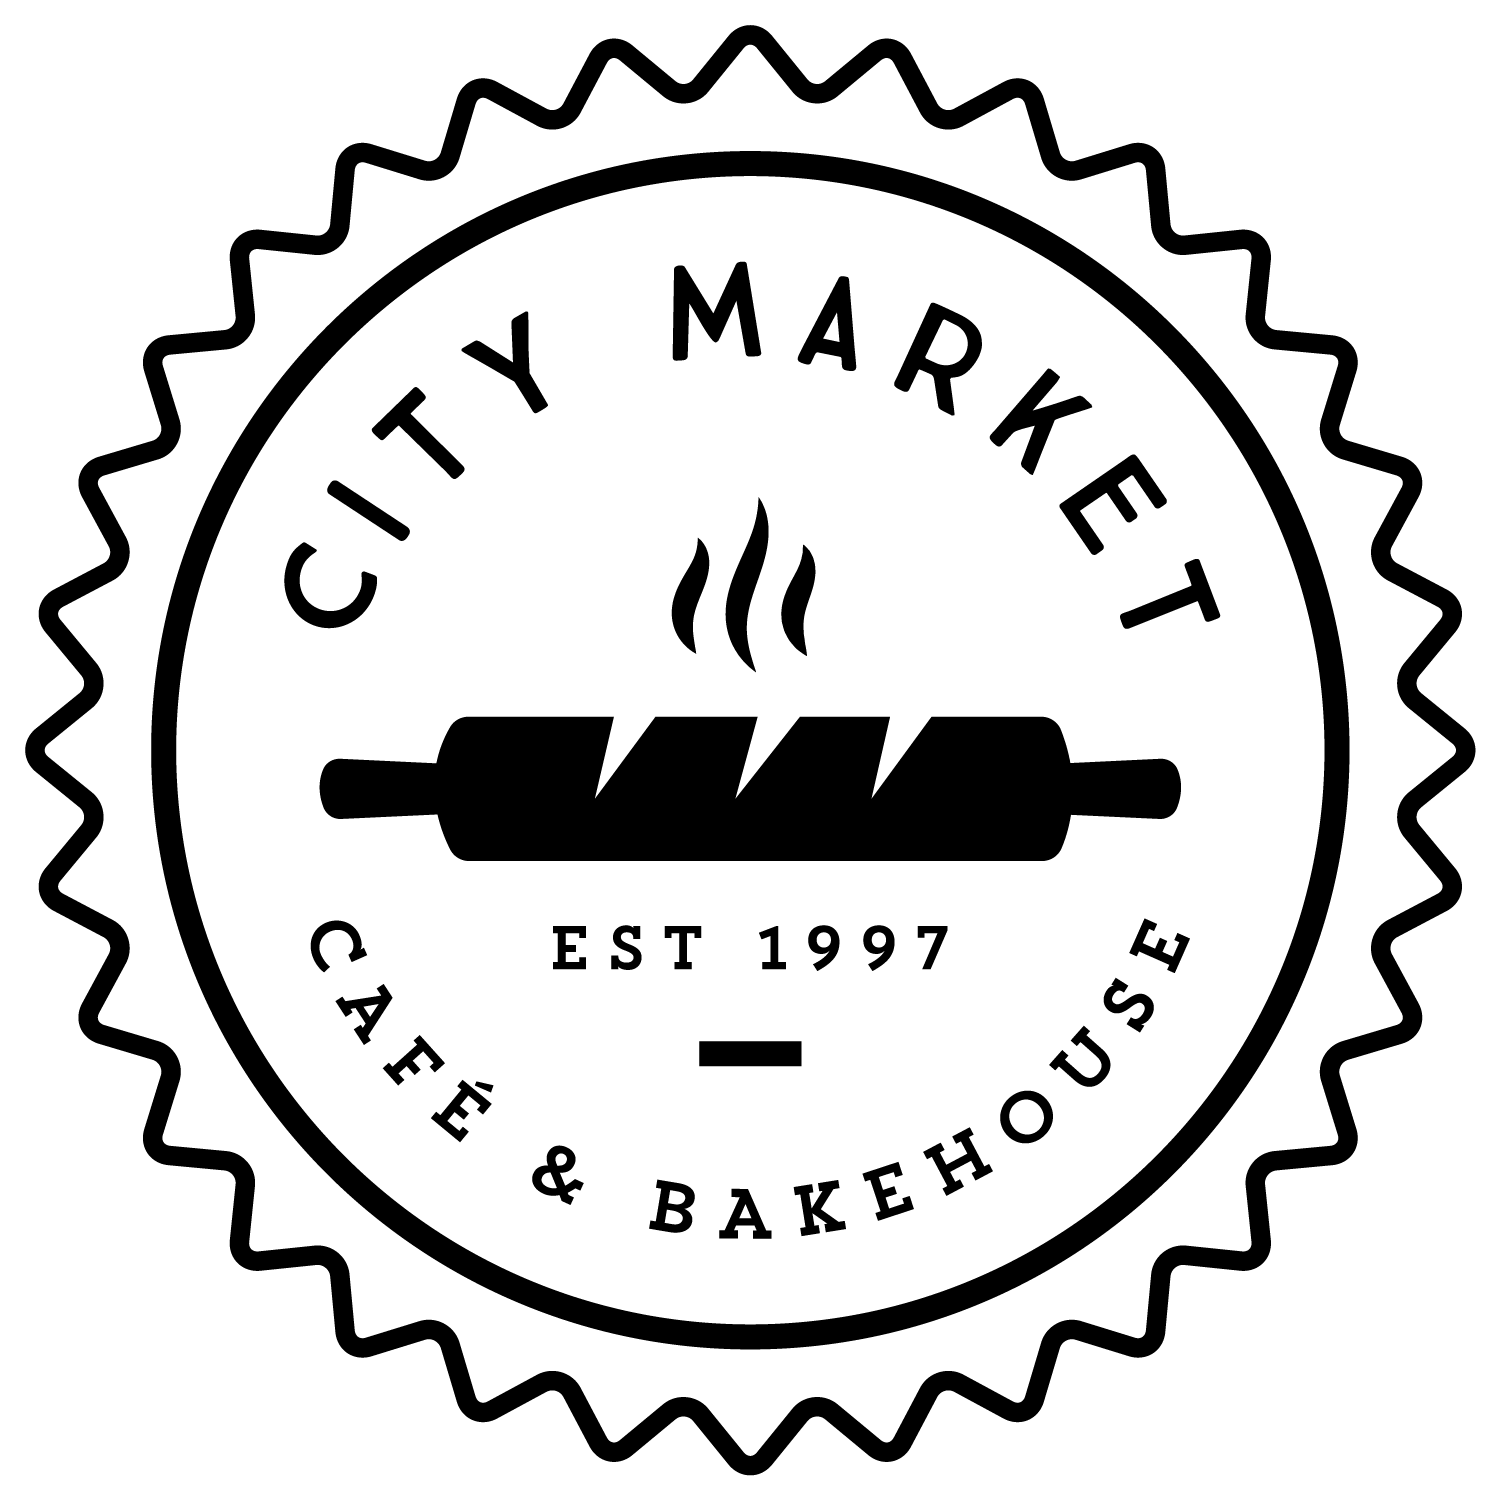 The City Market Cafe